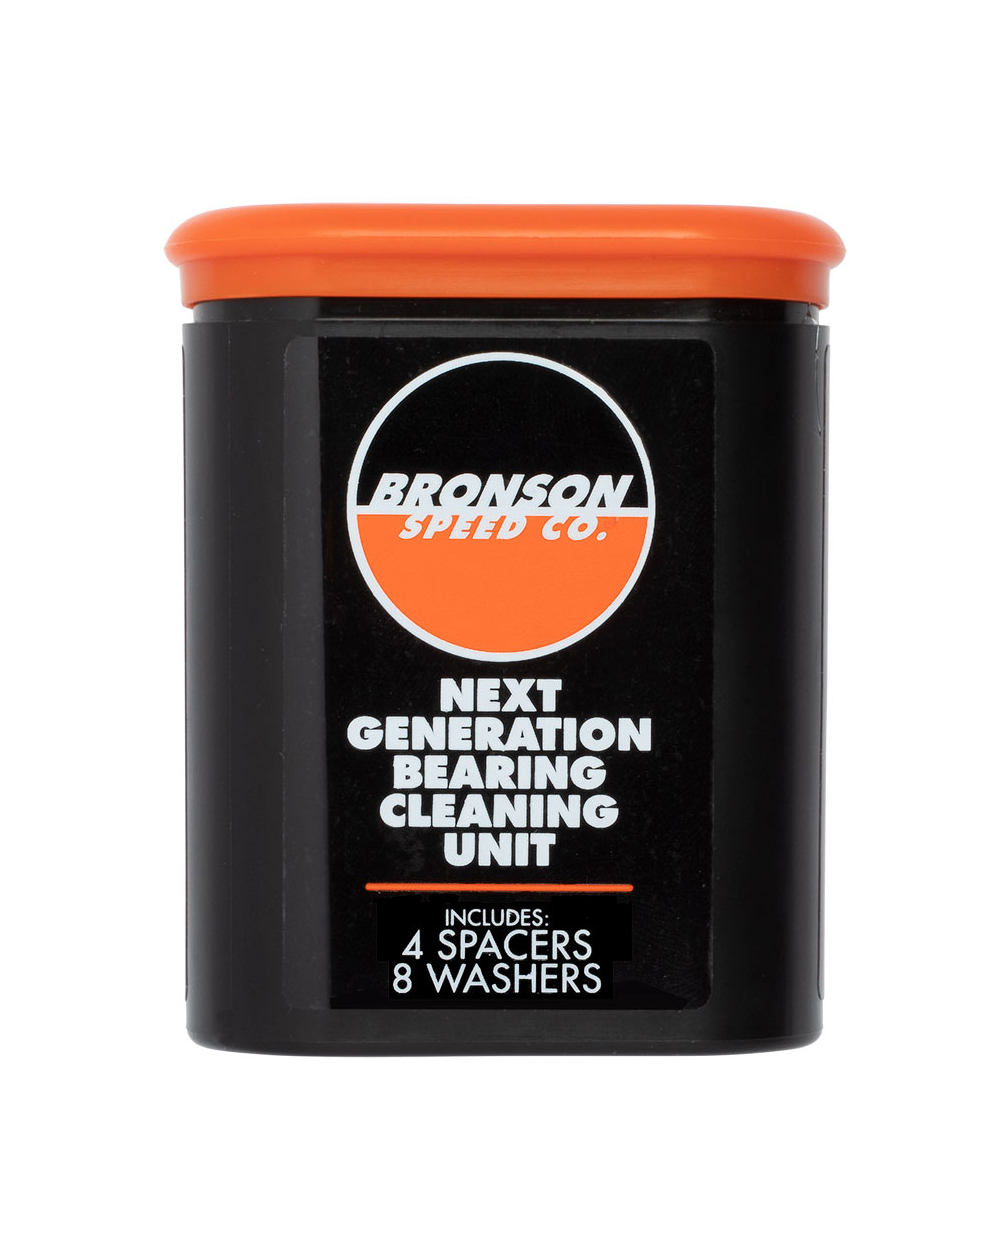 Bronson Speed Co. Limpiadora de Rodamientos Next Generation